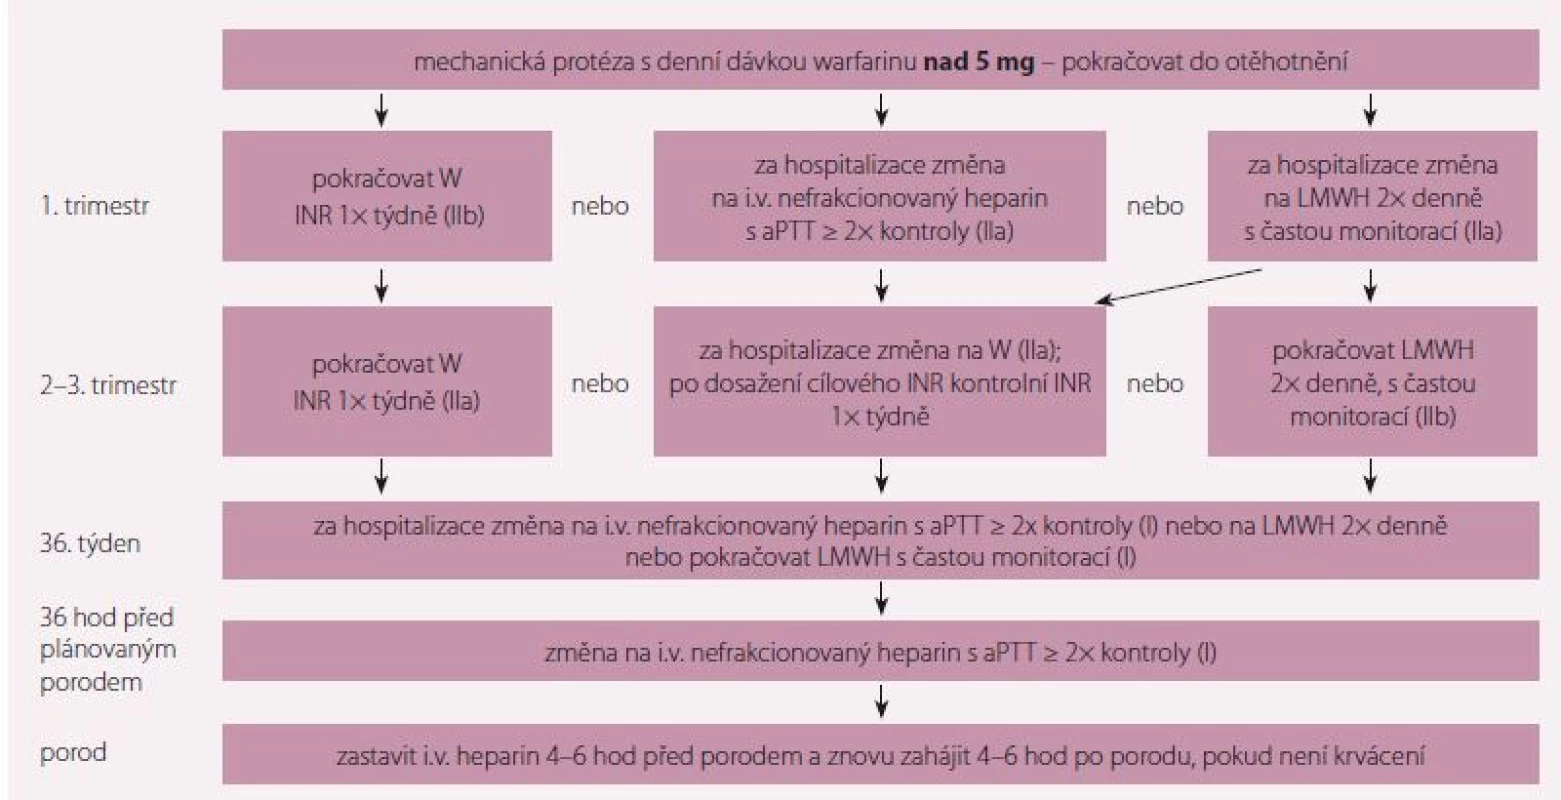 Doporučení k antikoagulační léčbě u pacientek s mechanickou chlopenní náhradou a denní dávkou warfarinu nad 5 mg. Upraveno
podle [1].